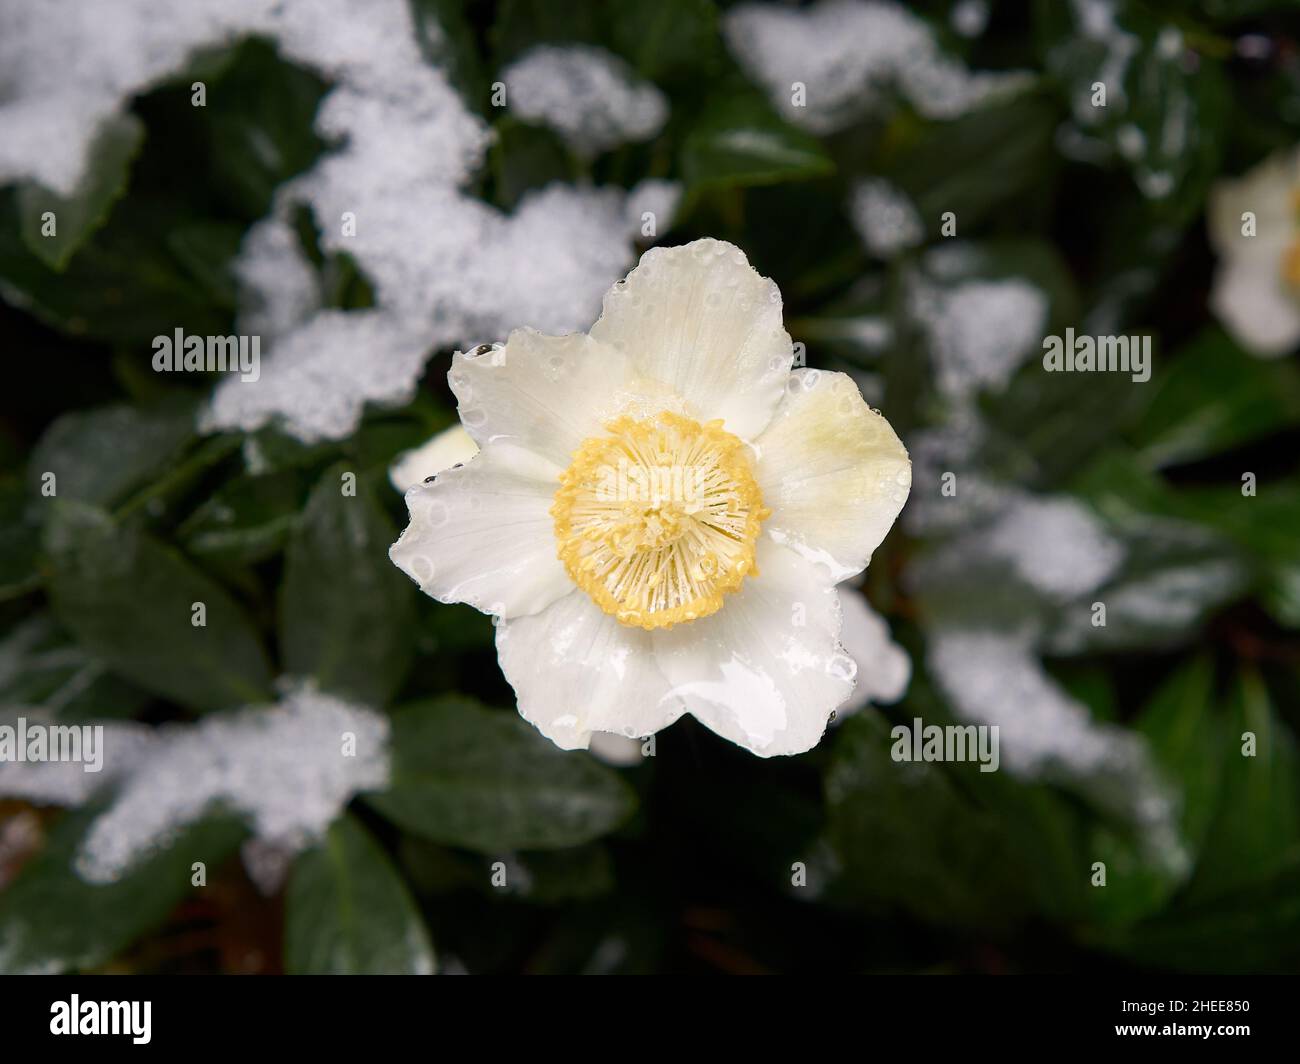 Primer plano de una rosa blanca y amarilla de invierno o rosa de Navidad con manchas de nieve en las hojas - Foto de stock